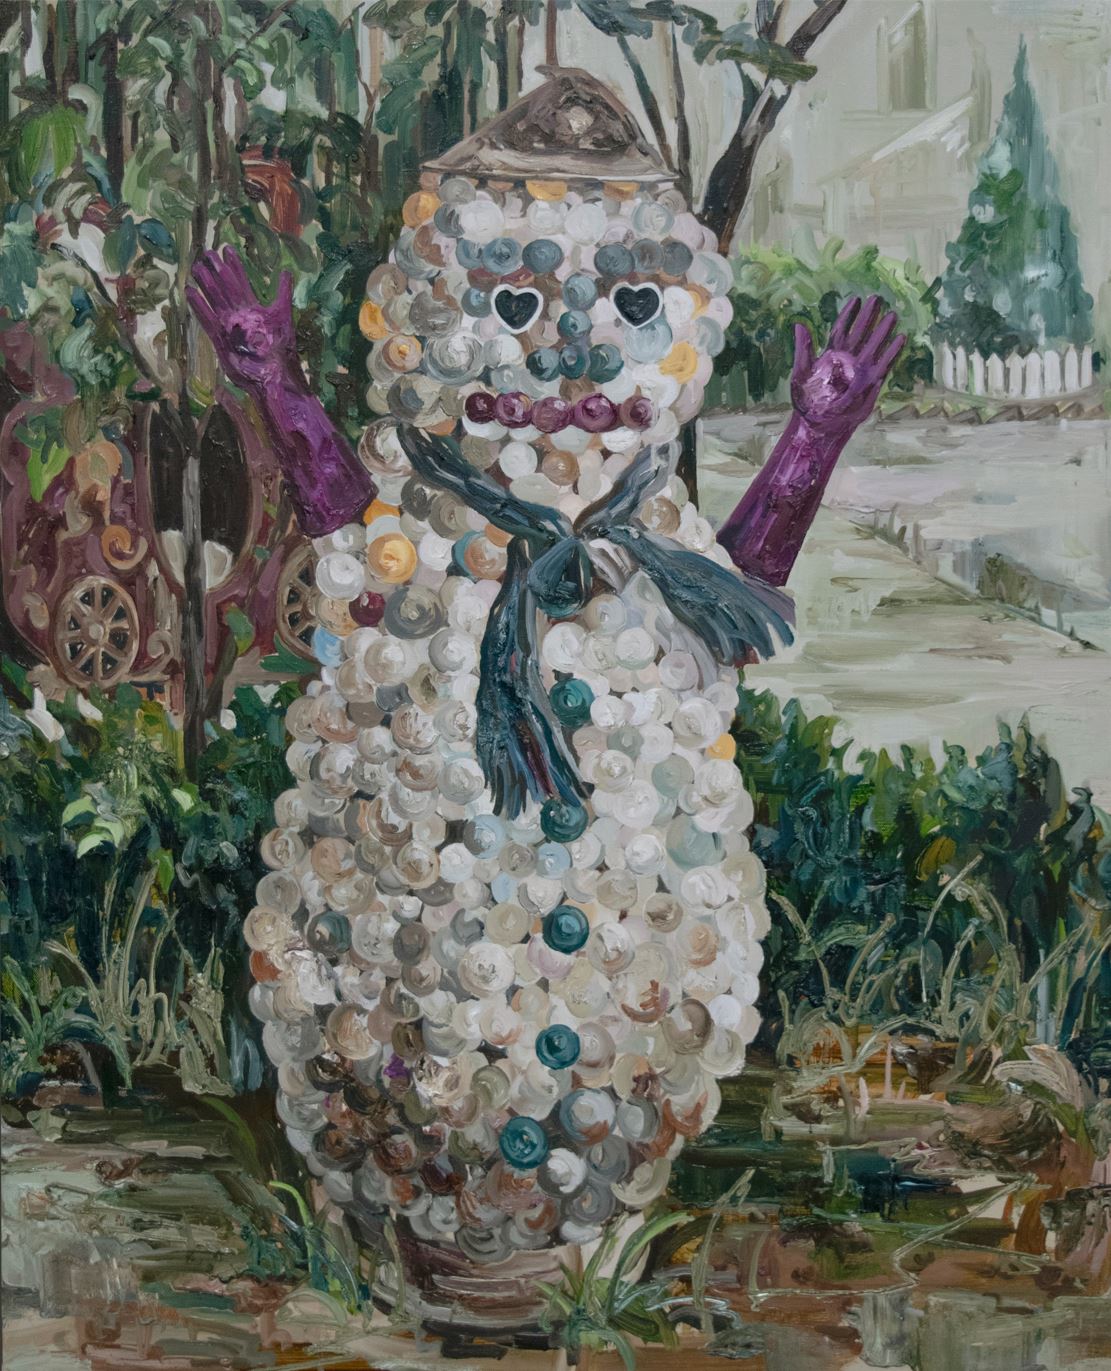 Snowman 90.9x72.7cm oil on canvas 2019